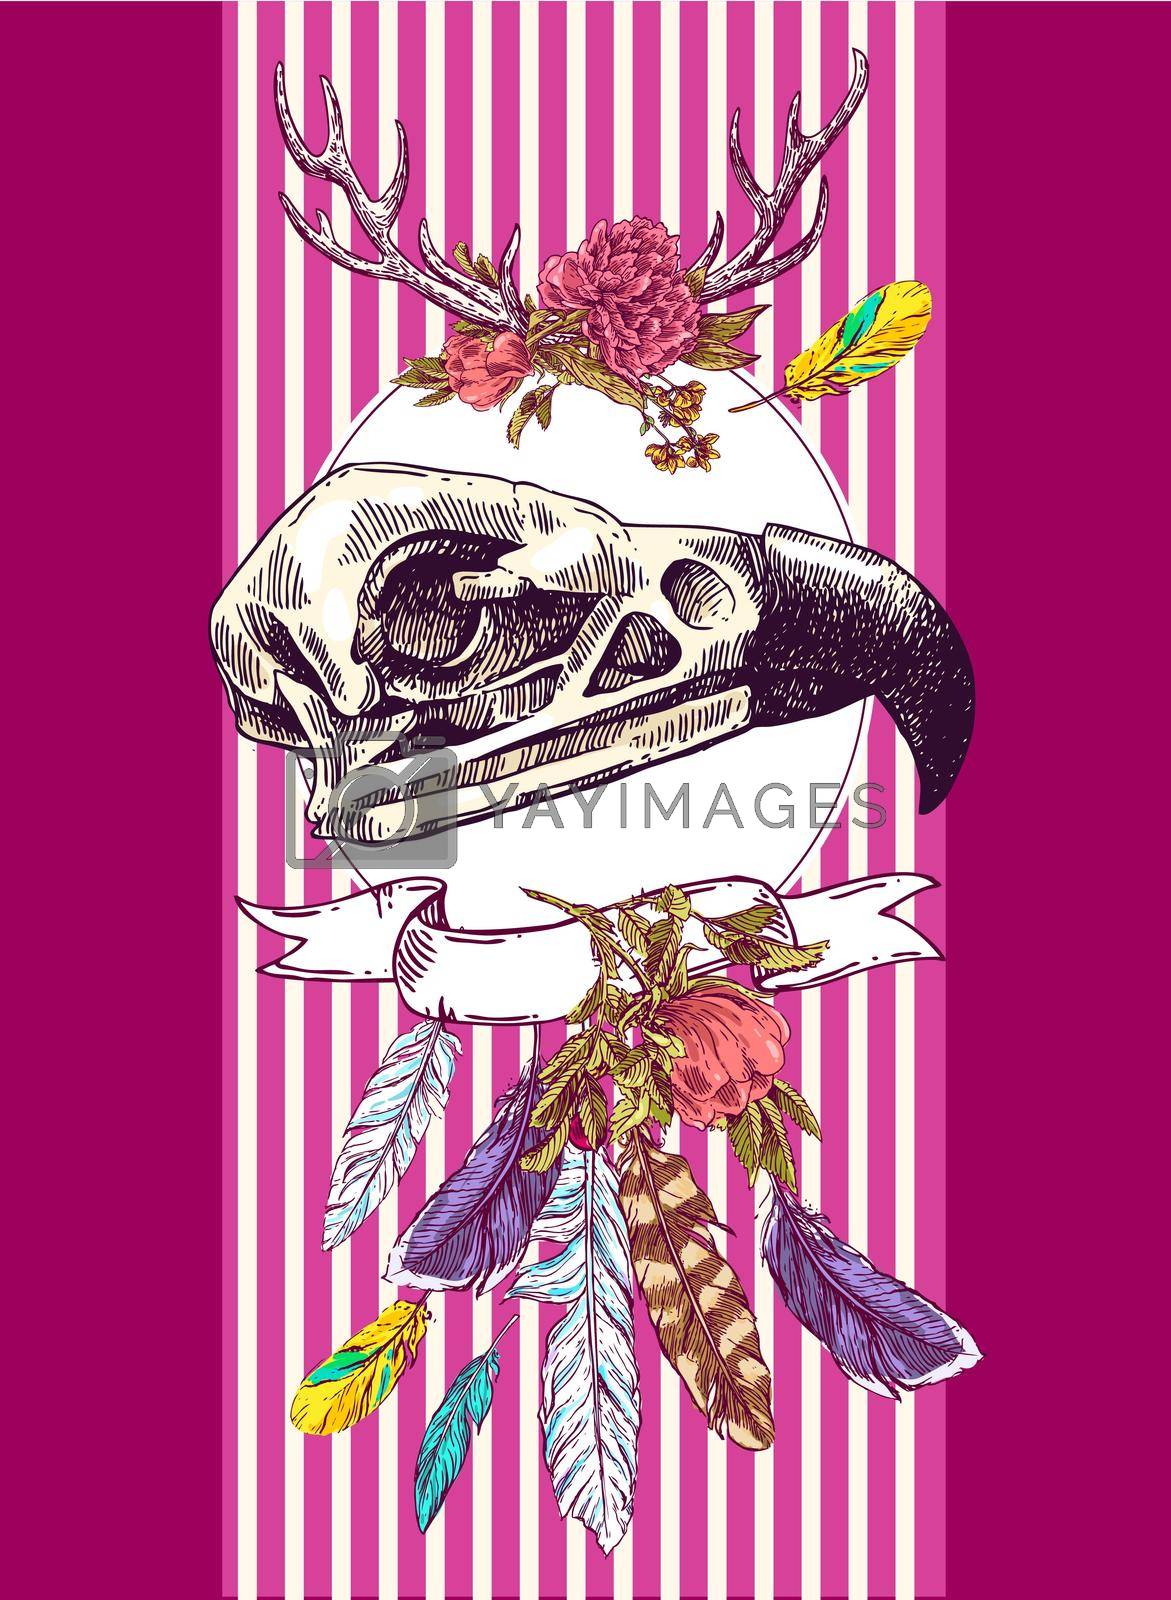 Royalty free image of illustration animal skull by steshnikova